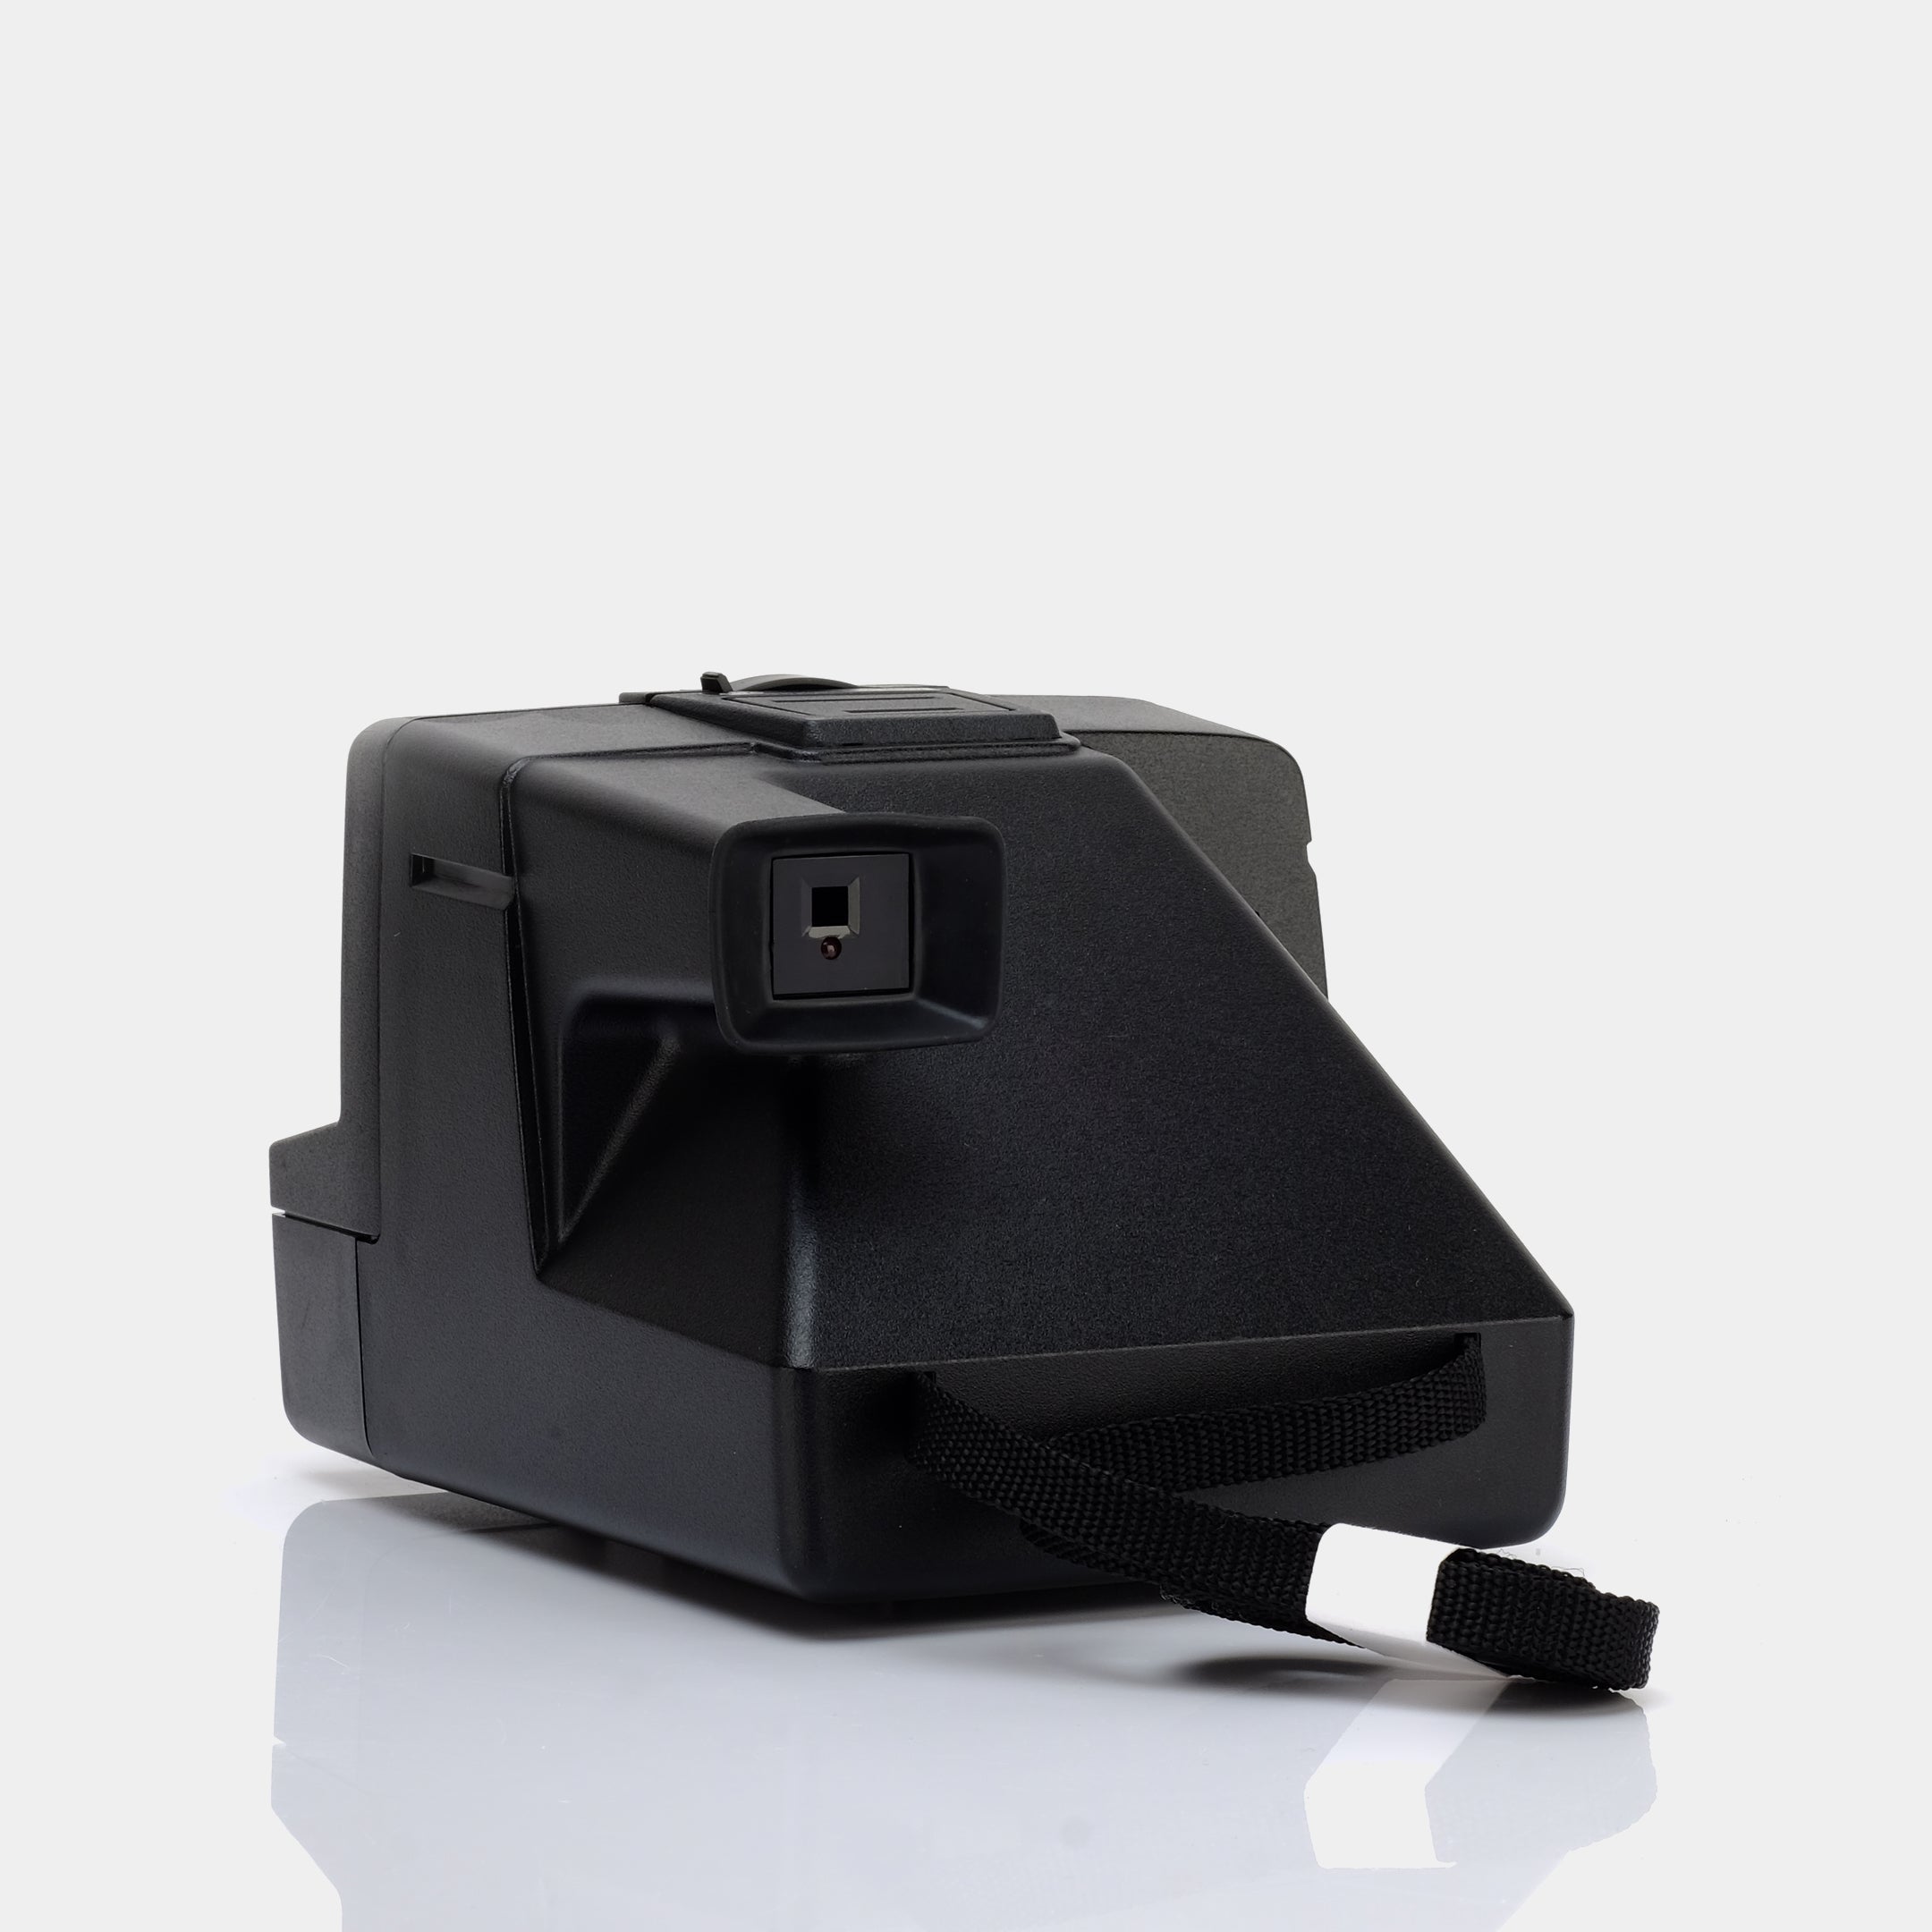 Polaroid SX-70 Sonar AutoFocus One Step Instant Film Camera